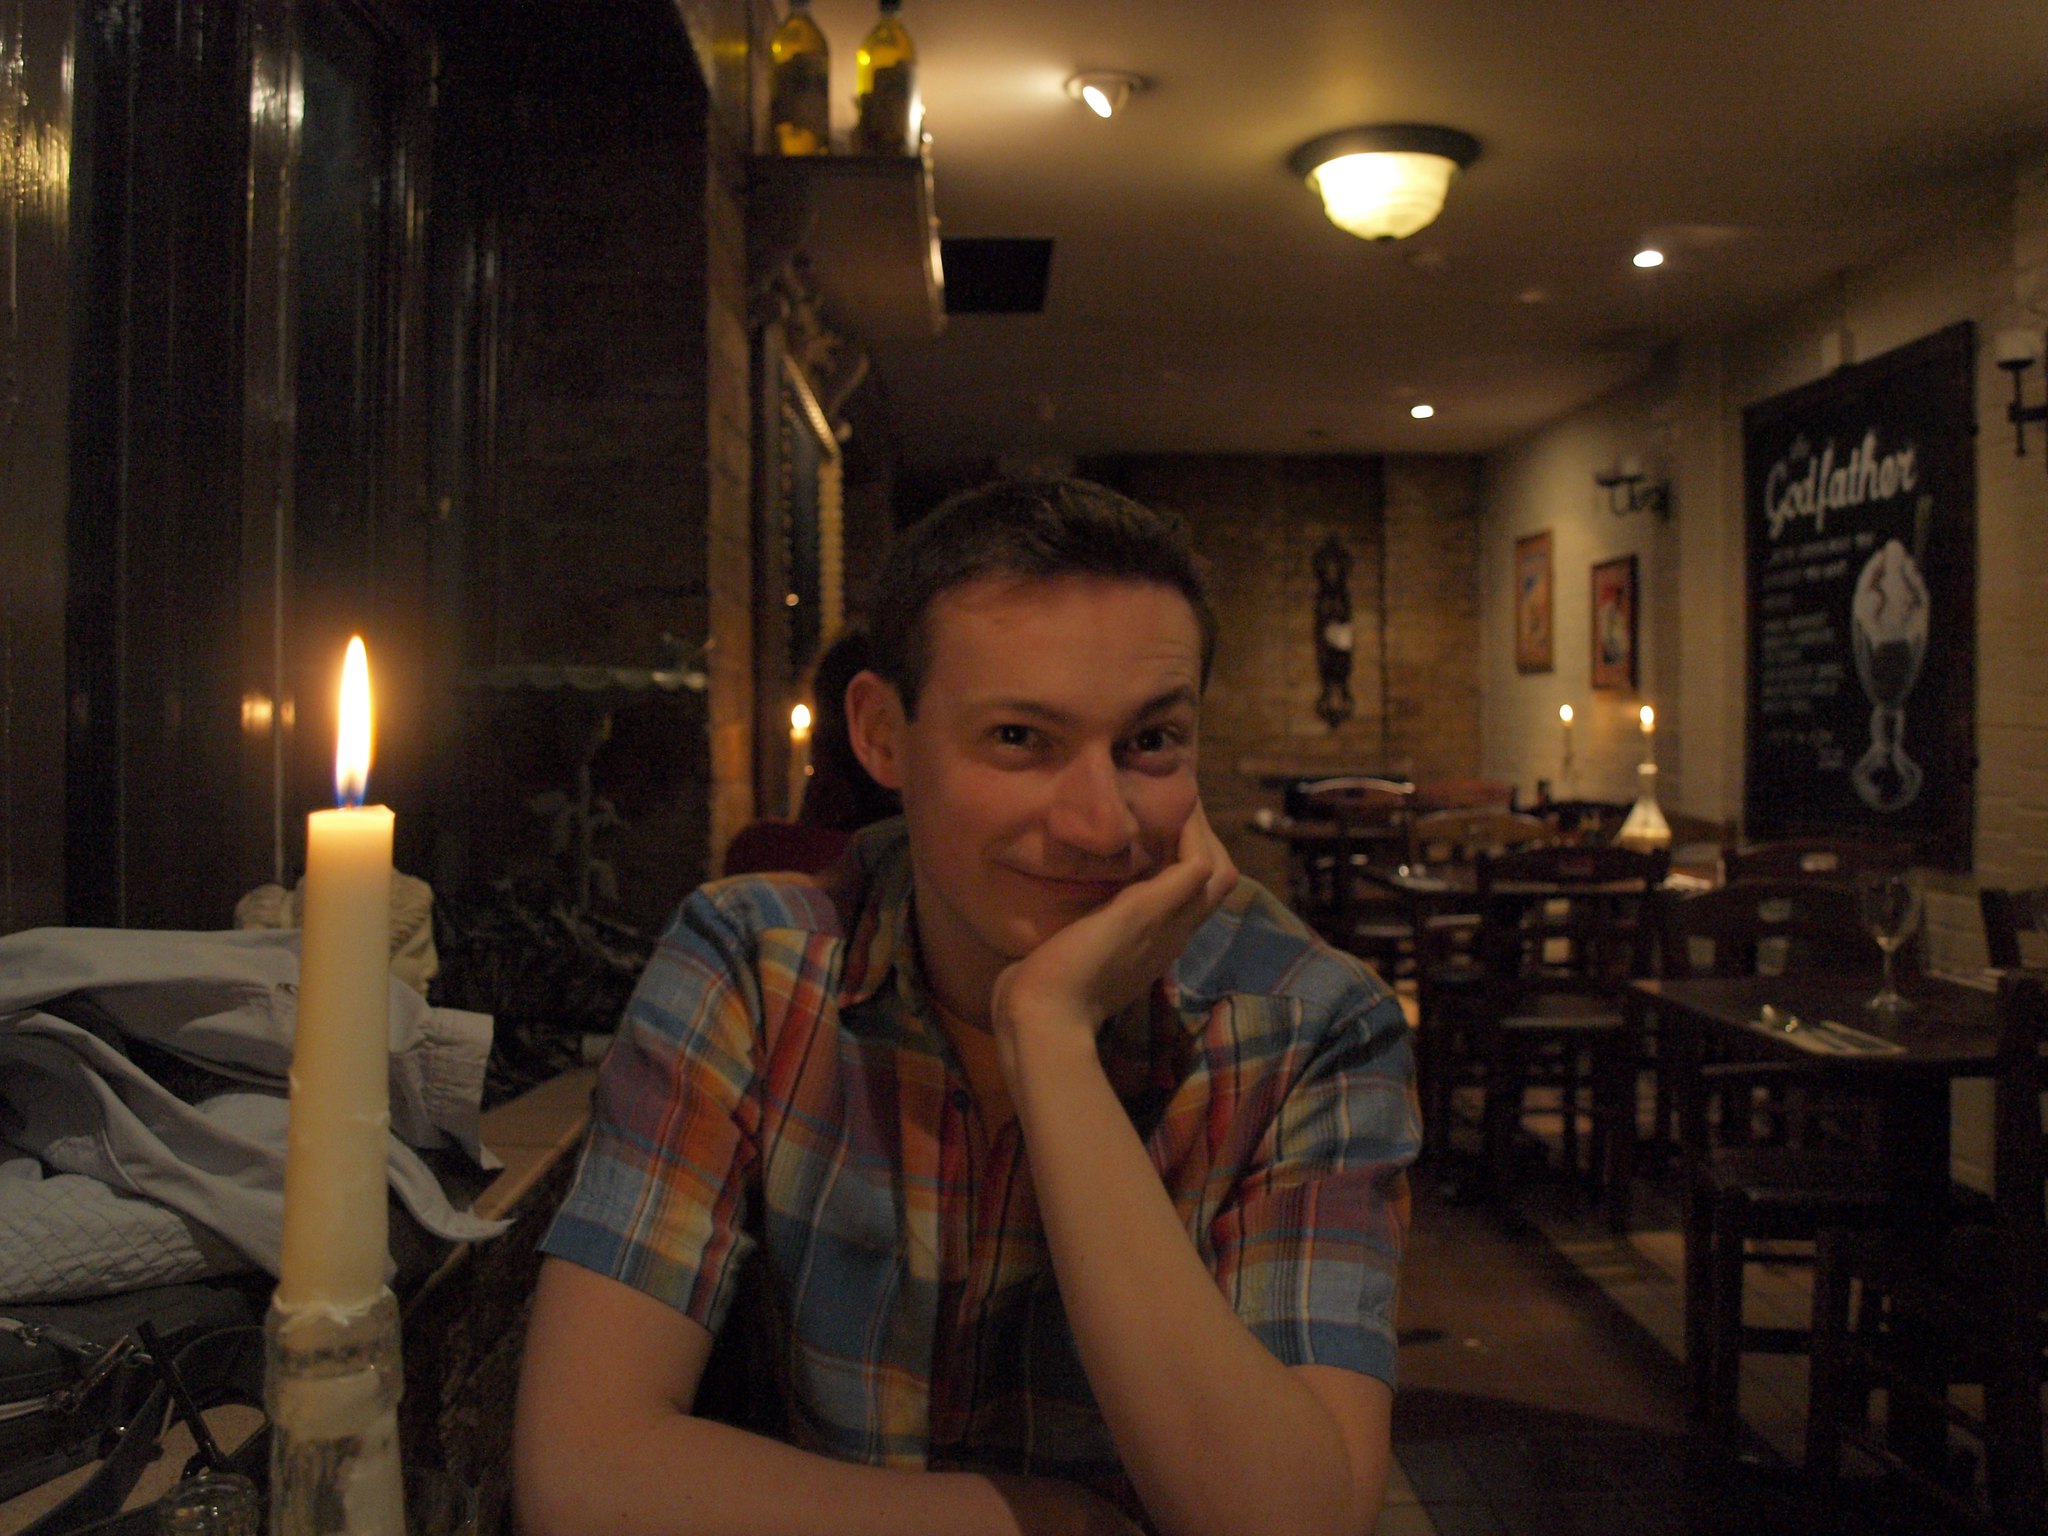 Un homme souriant et l'air heureux alors qu'il se fait prendre en photo dans un restaurant | Source : Flickr